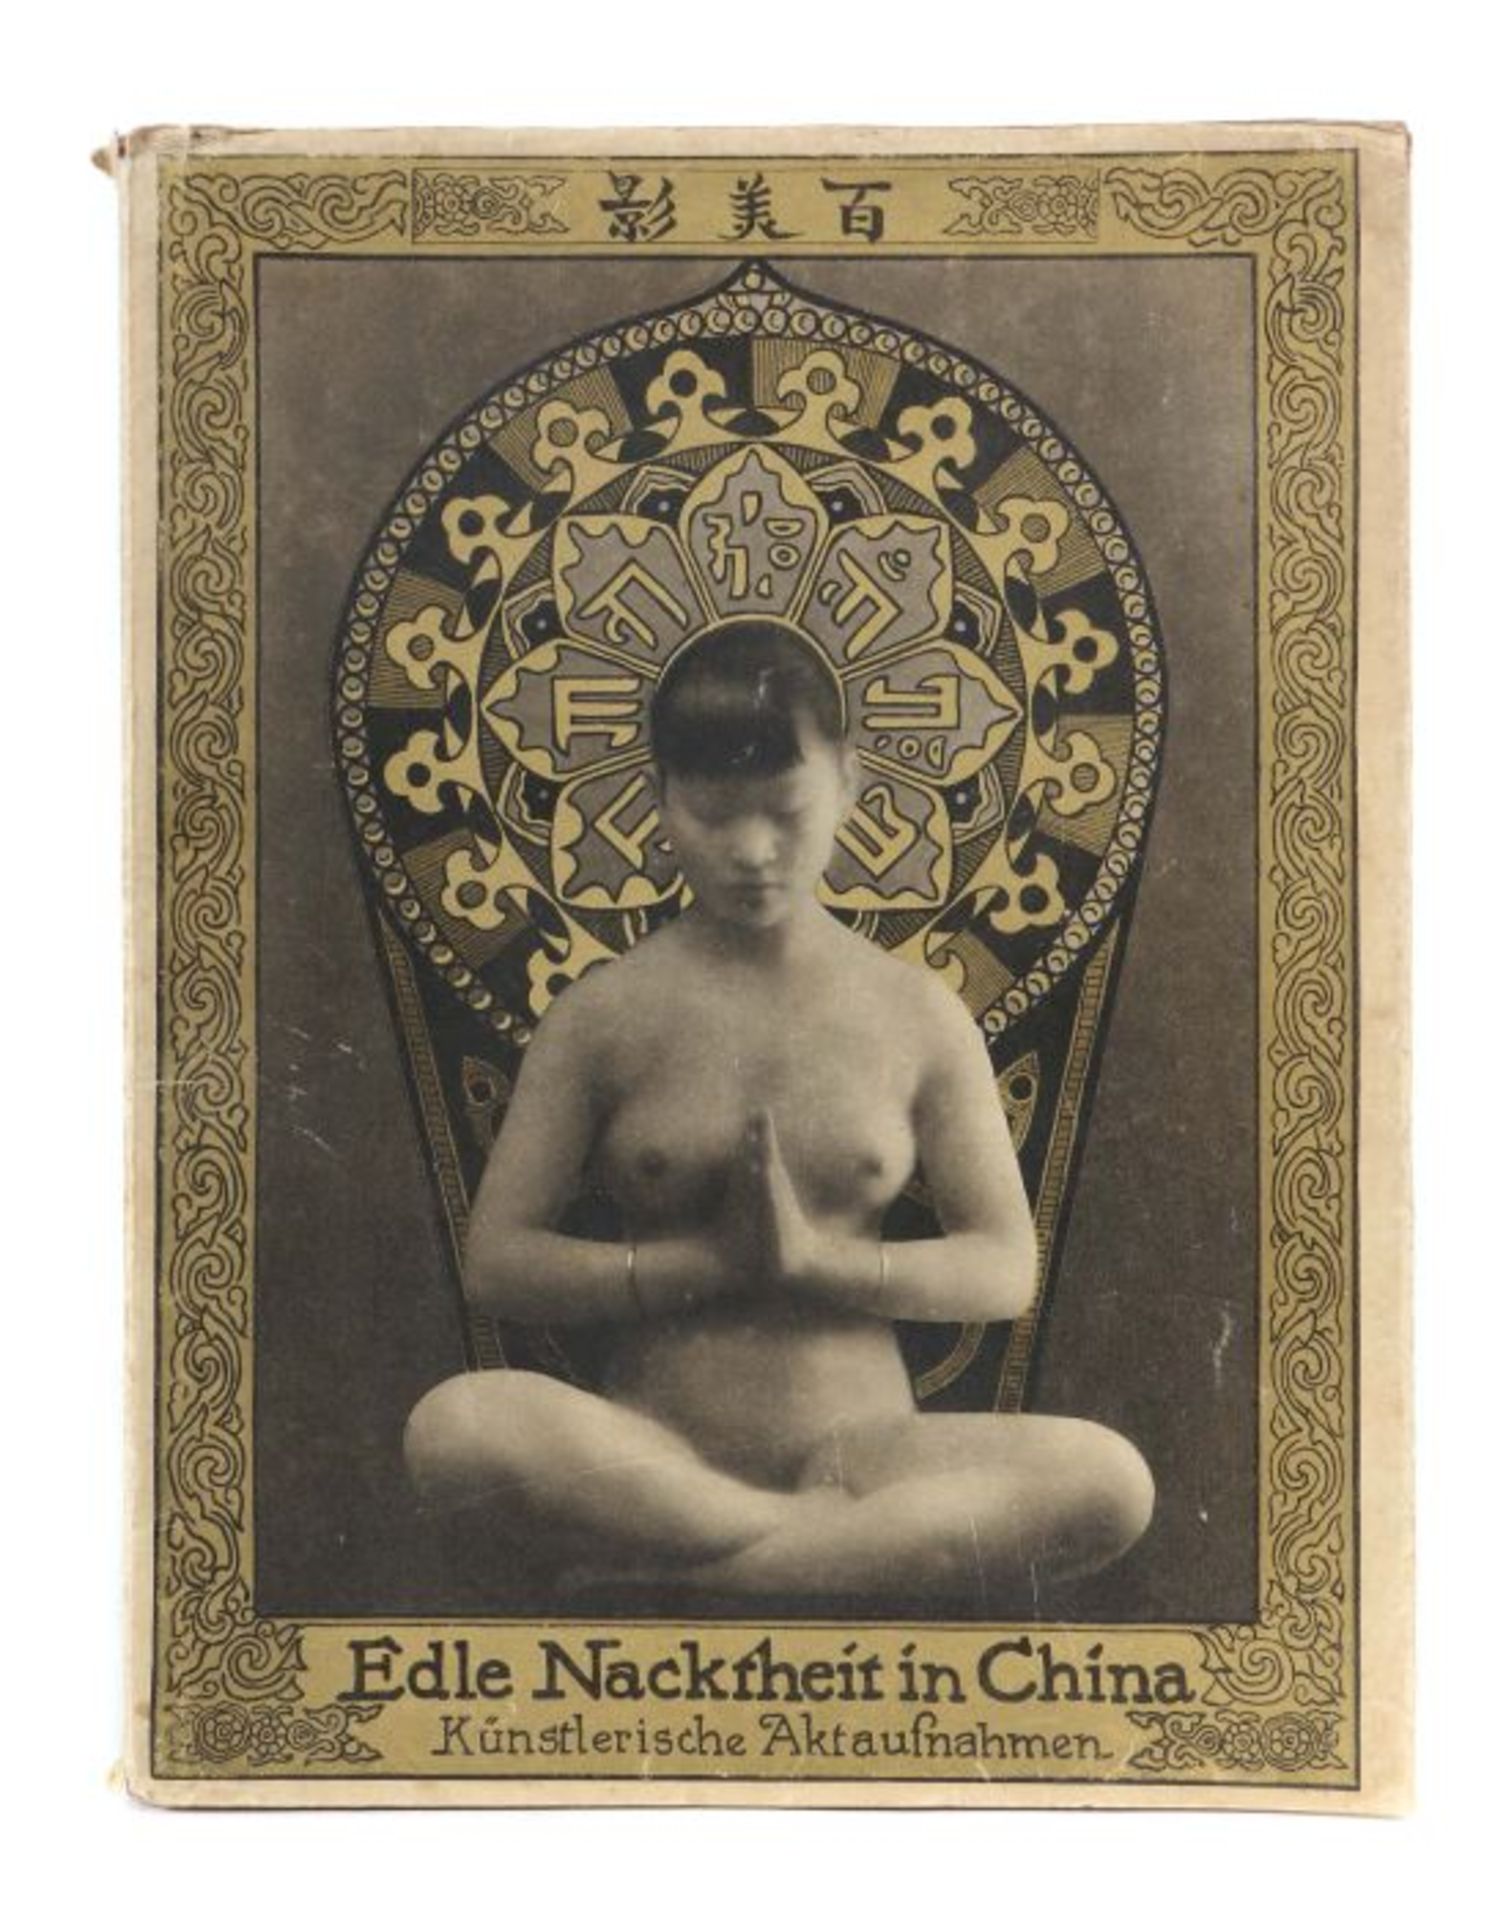 Edle Nacktheit in China Künstlerische Nacktaufnahmen, Berlin, Eigenbrödler Verlag AG, 1928, 32